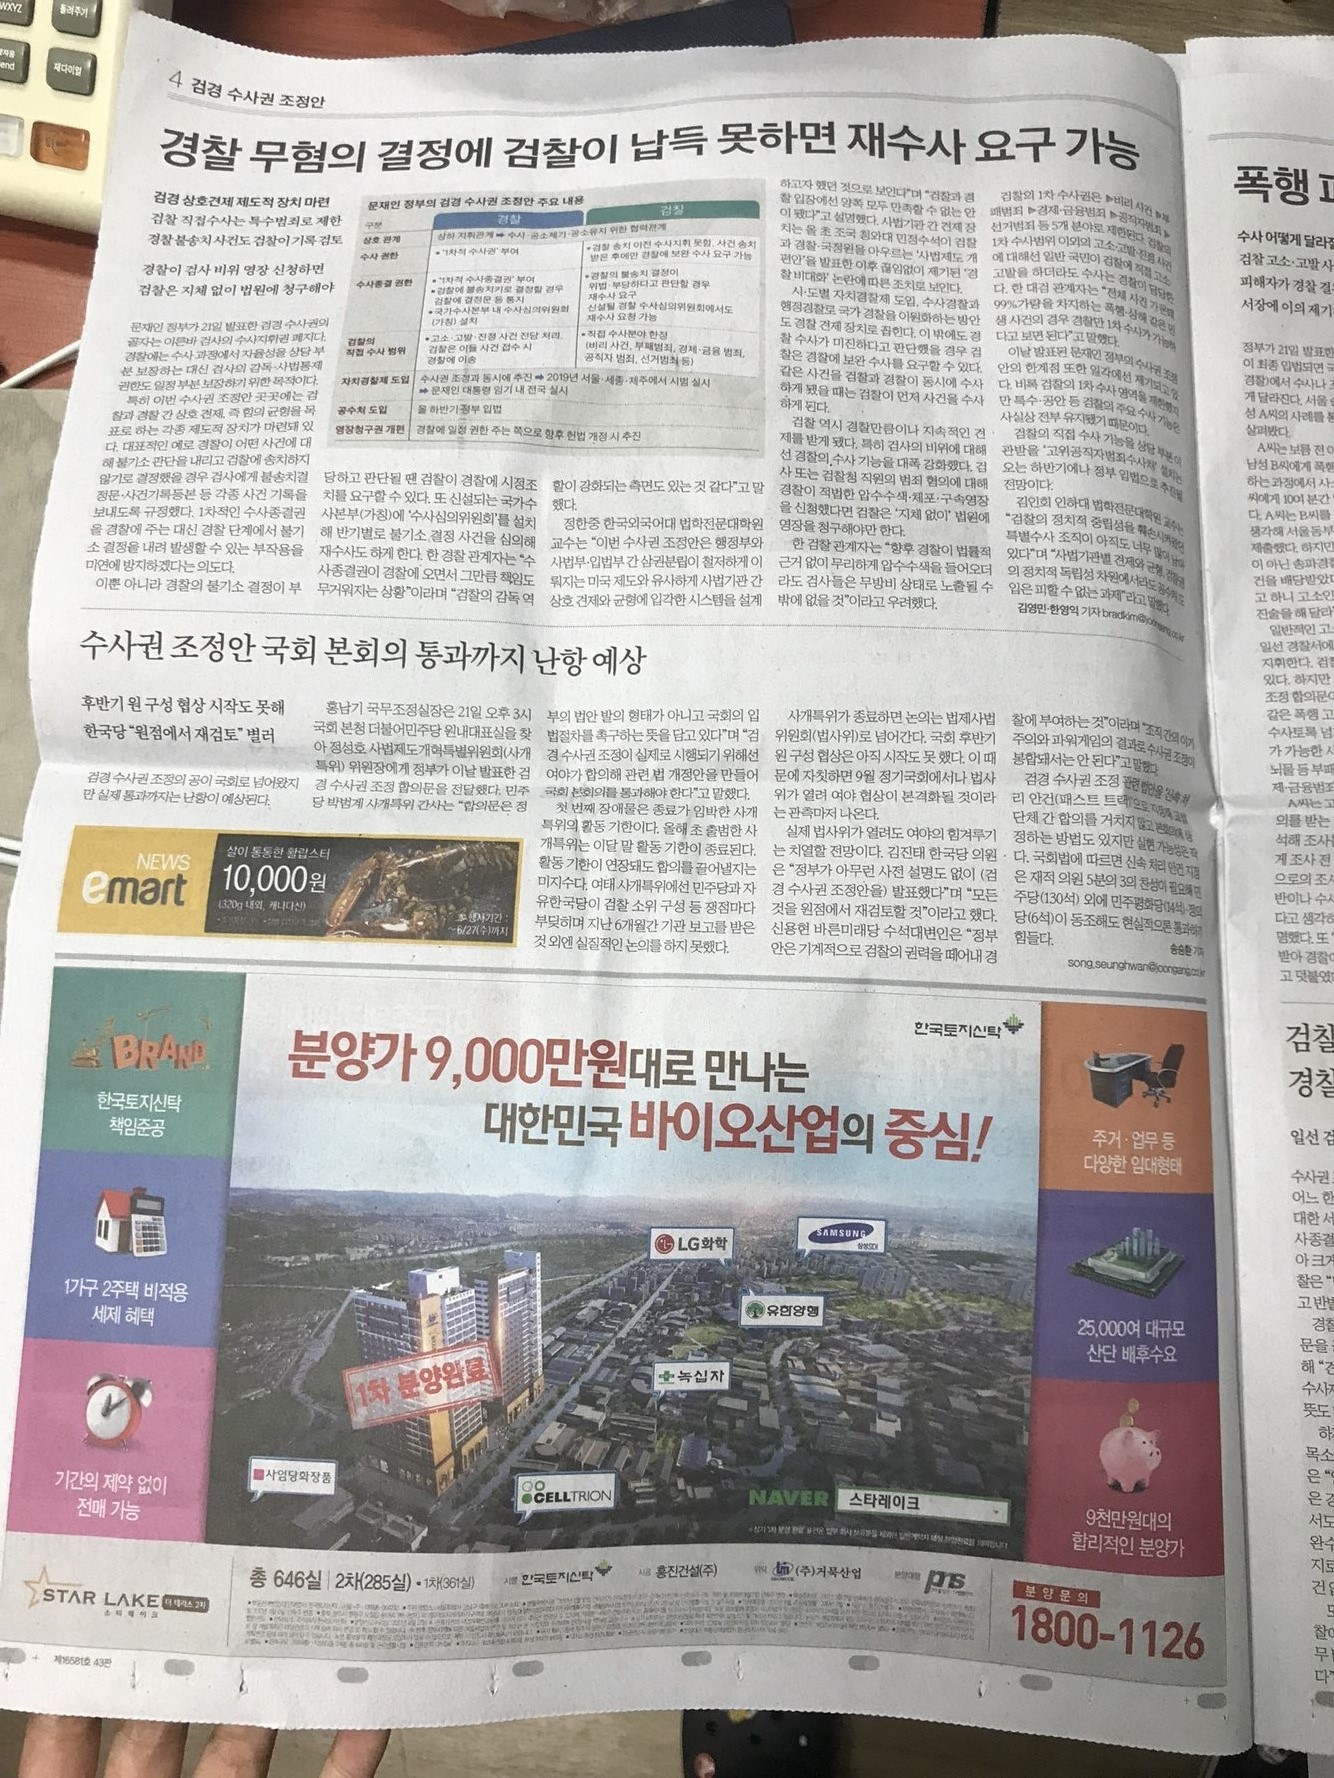 6월22일 중앙일보 4 스타레이크 더 스타 2차 (5단통).jpg